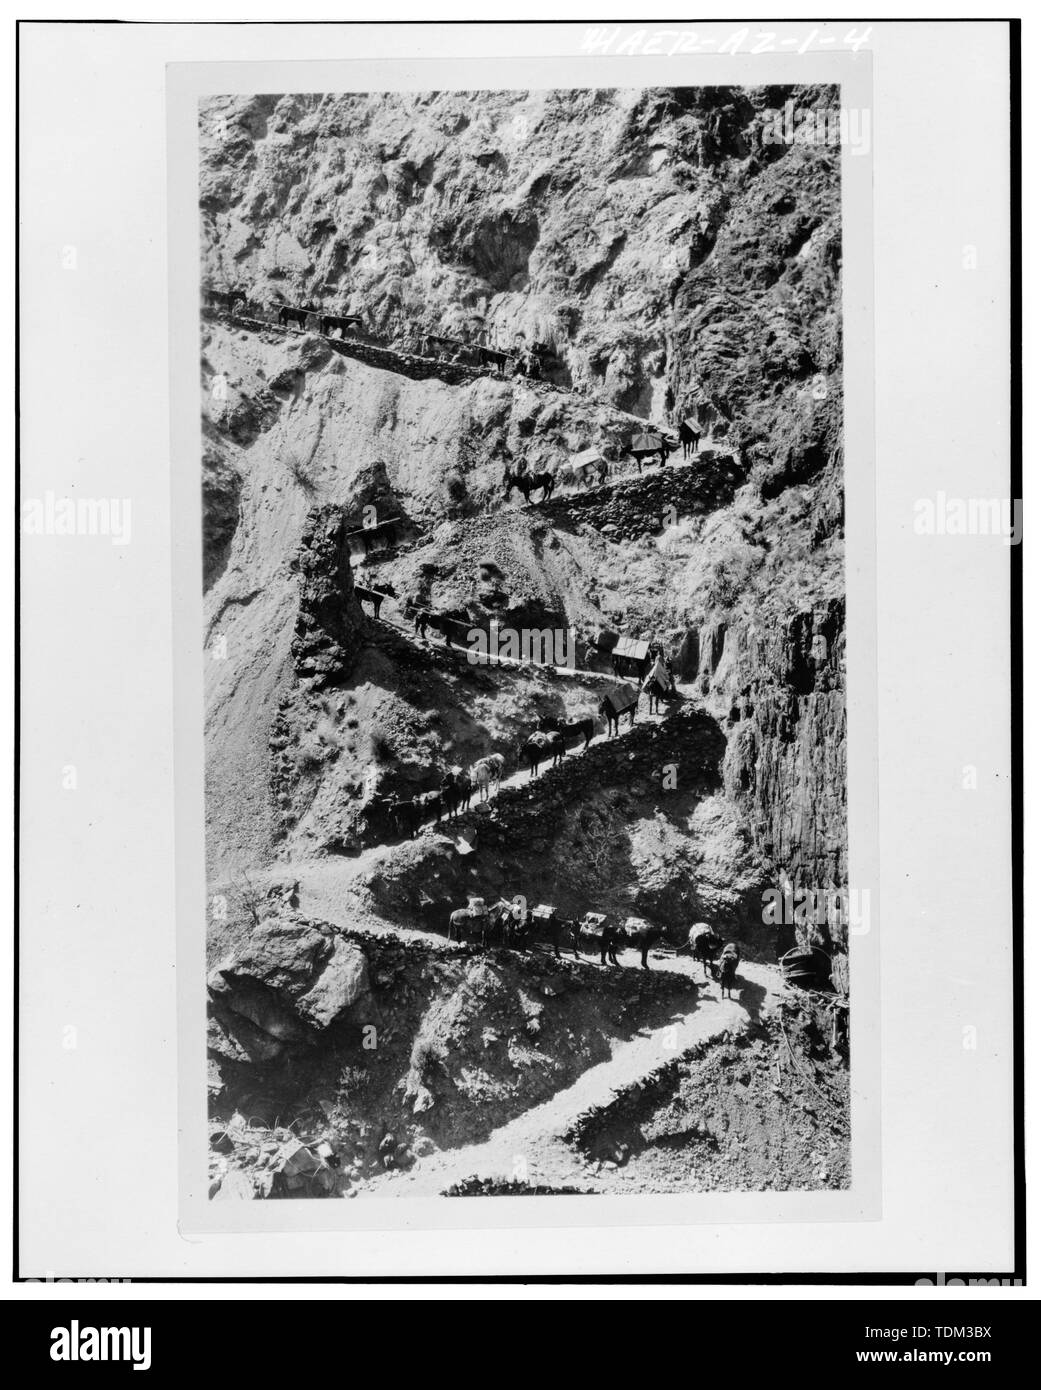 PACK ZUG WARTEN ZU ENTLADEN AM FUSS DER YAKI TRAIL. Etwa zweieinhalb Tonnen Stahl an Tieren gezeigt. Hinweis der Spule von 1-1-2' WIND KABEL IM VORDERGRUND. - Kaibab Trail Suspension Bridge Spanning Colorado River, Grand Canyon, Coconino County, AZ Stockfoto